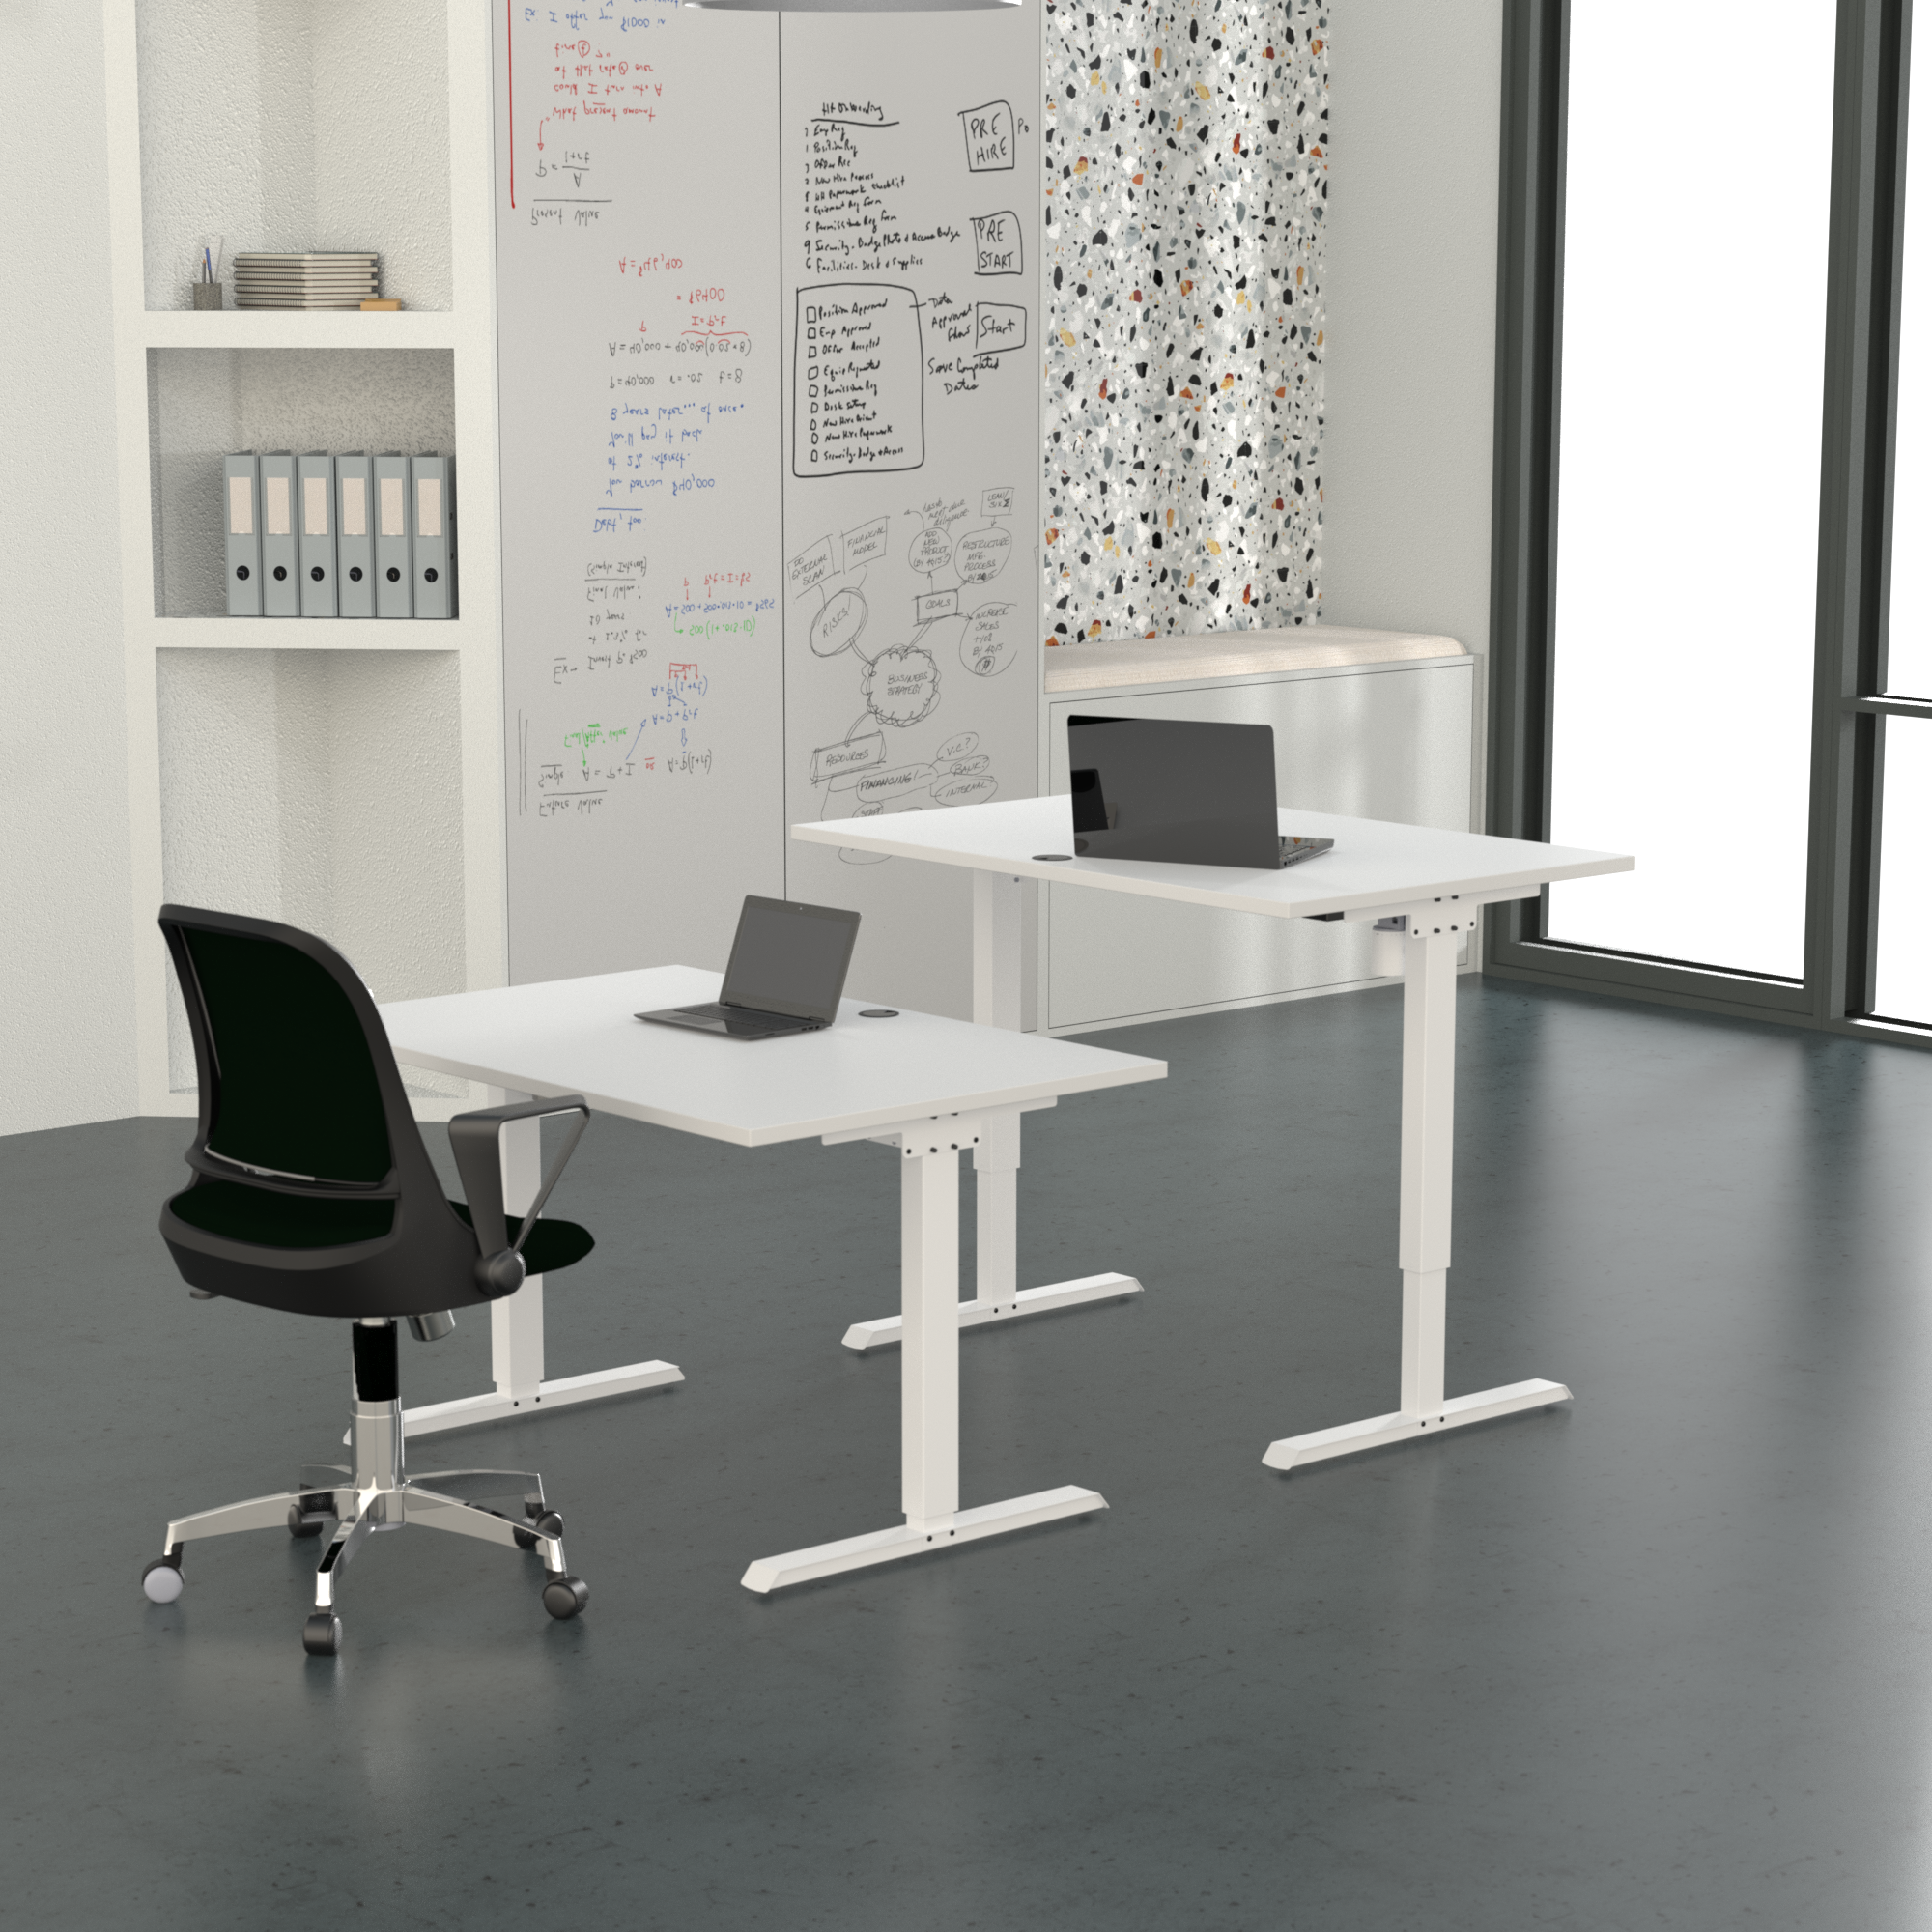 Schreibtisch steh/sitz | 100x80 cm | Weiß mit weißem Gestell